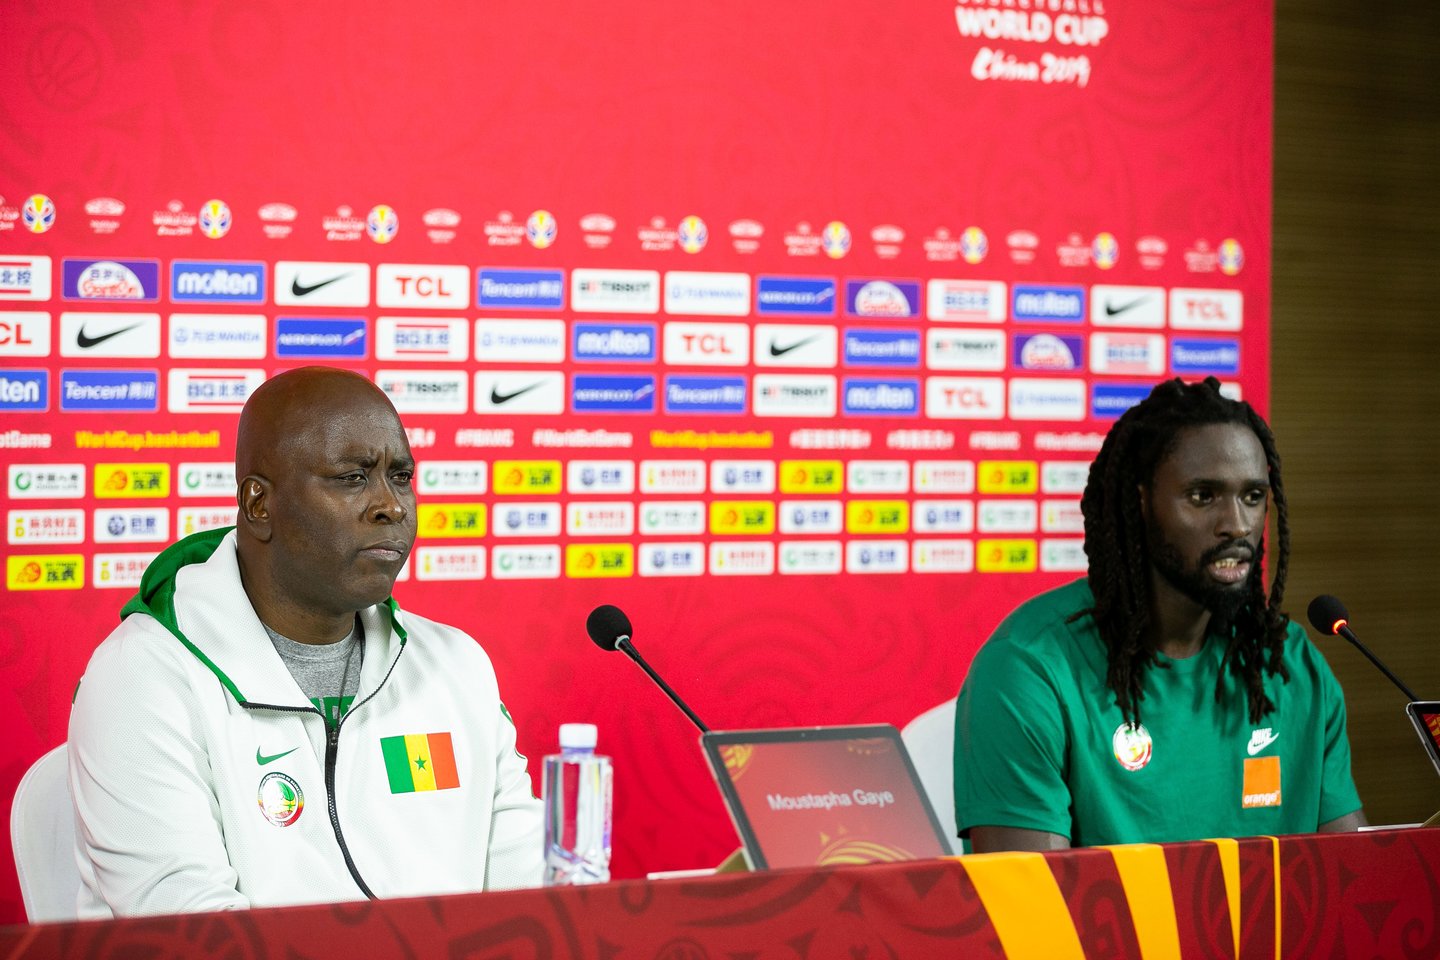  Senegalo rinktinės treneriui prabilus prancūziškai spaudos konferencijoje prasidėjo suirutė.<br> Ž.Gedvilo/Scanpix nuotr.